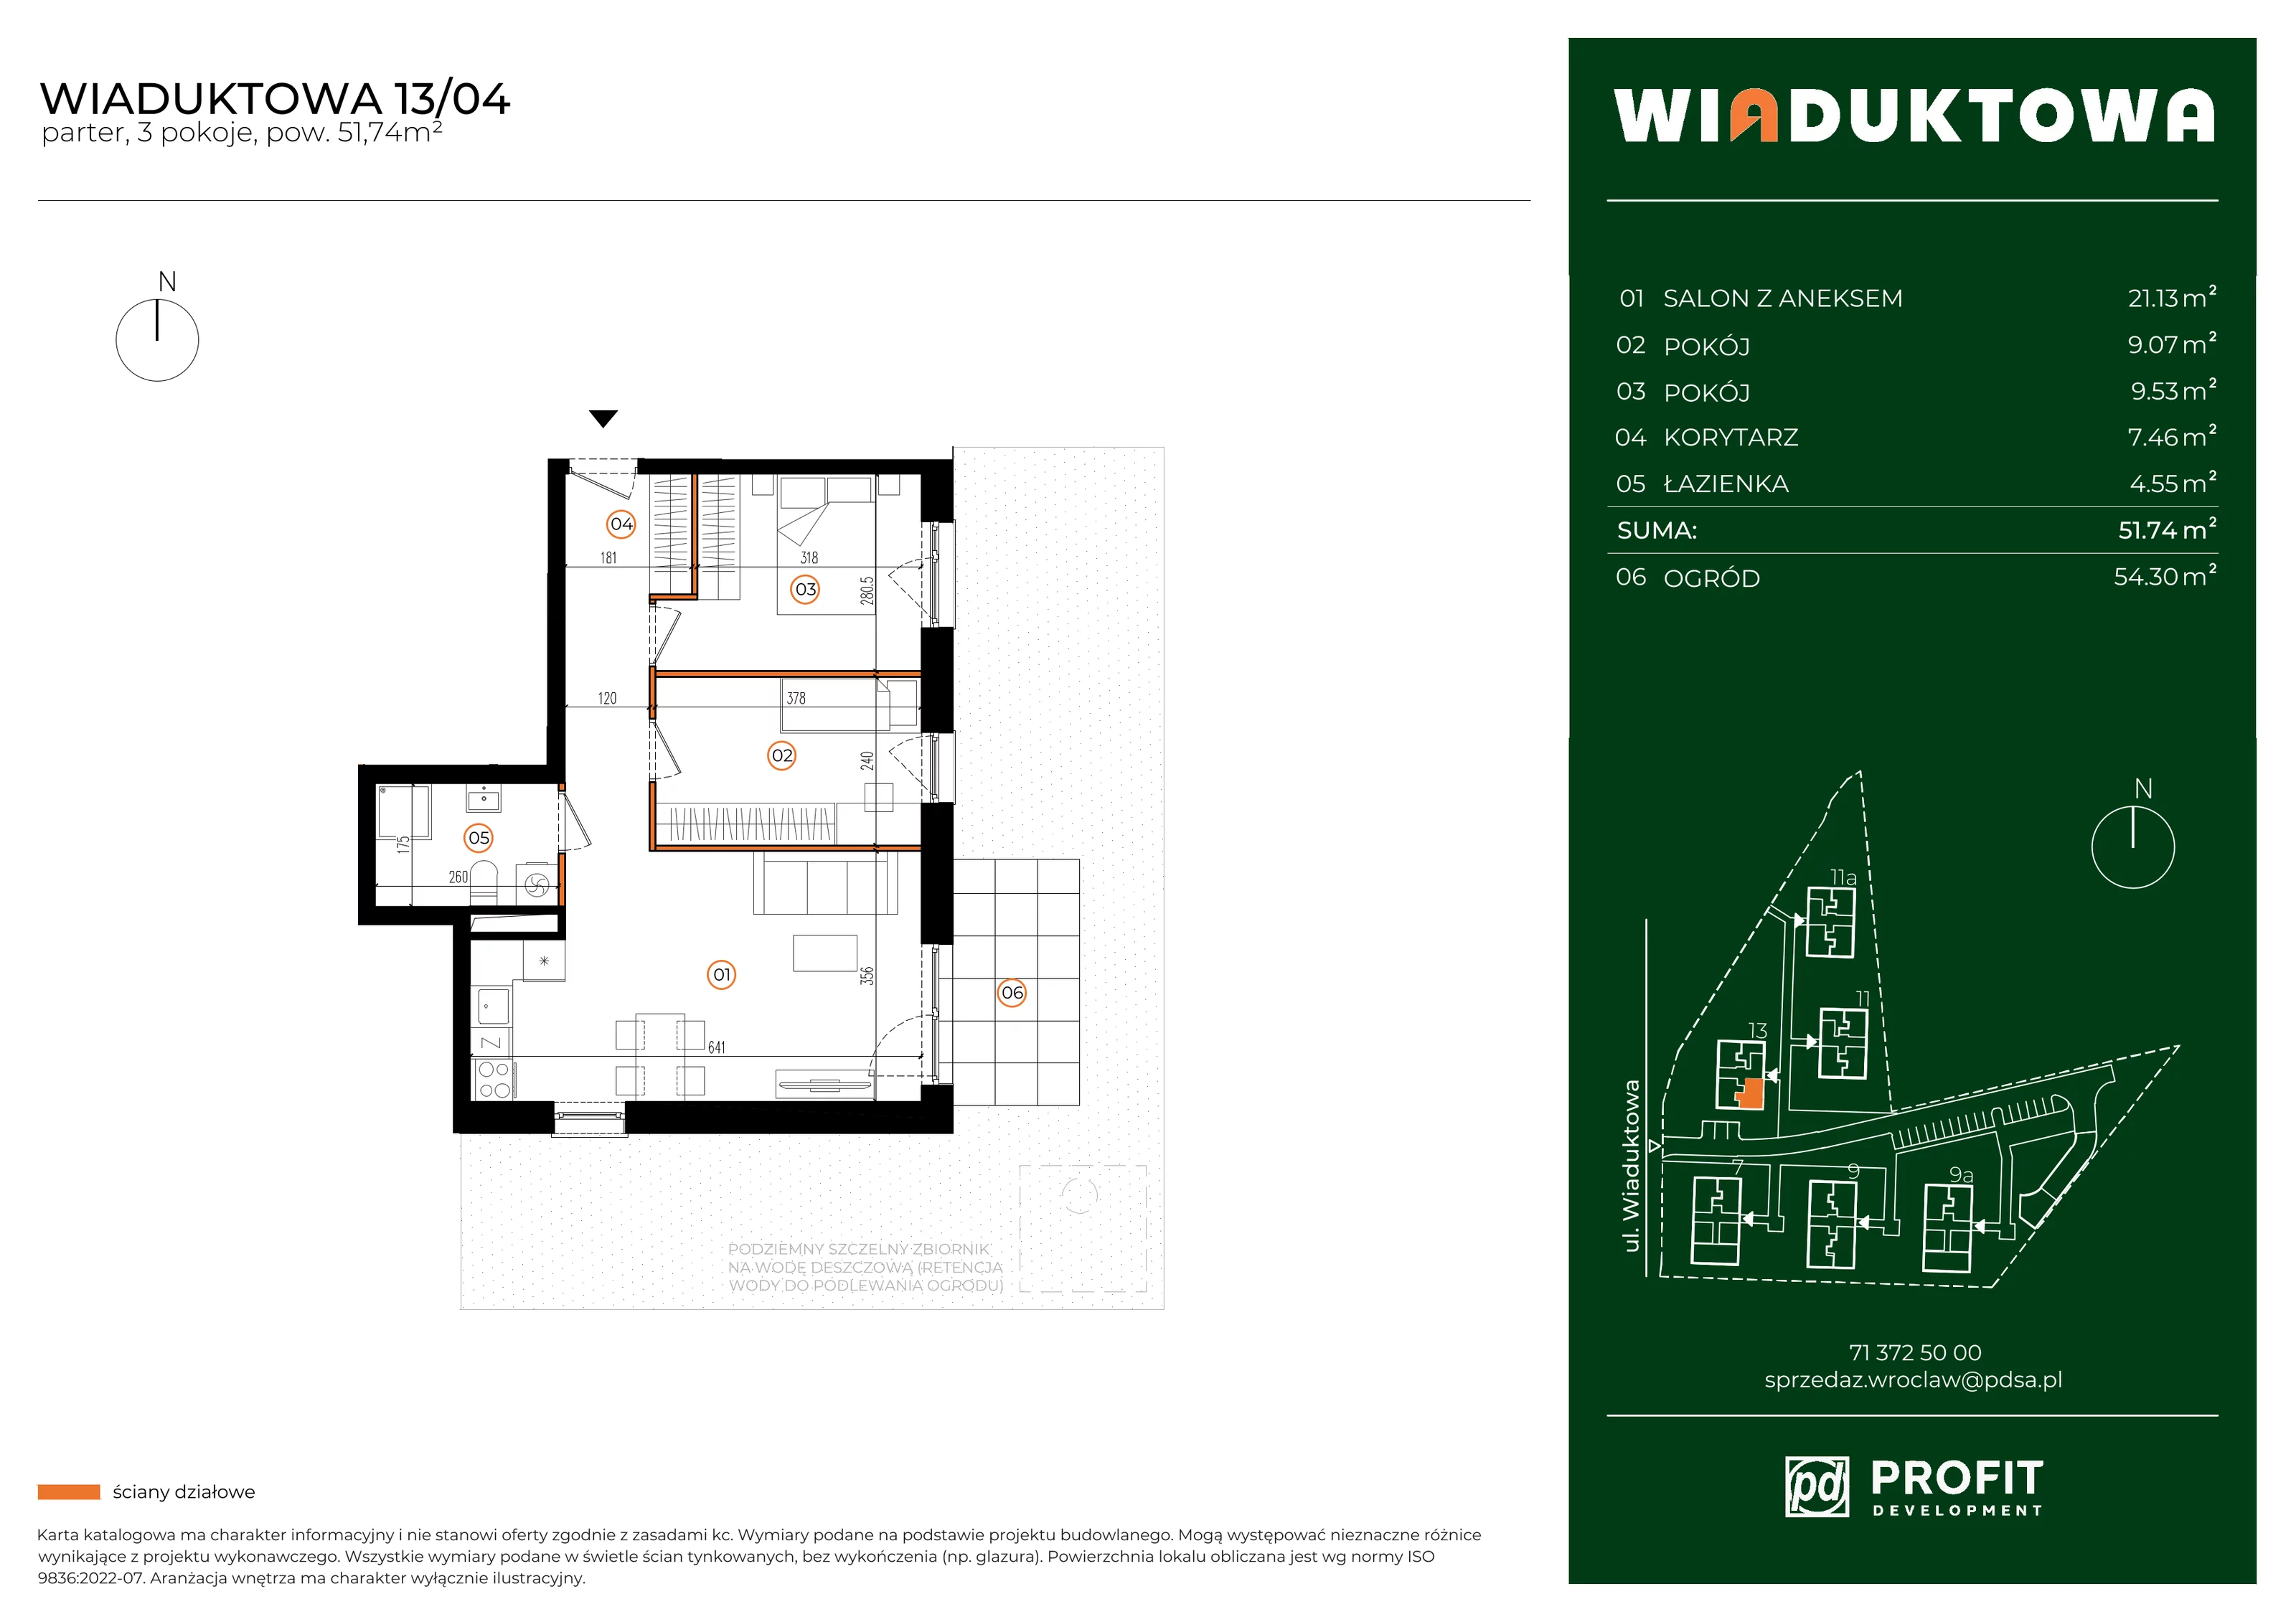 Mieszkanie 51,74 m², parter, oferta nr WI/13/04, Wiaduktowa, Wrocław, Krzyki-Partynice, Krzyki, ul. Wiaduktowa